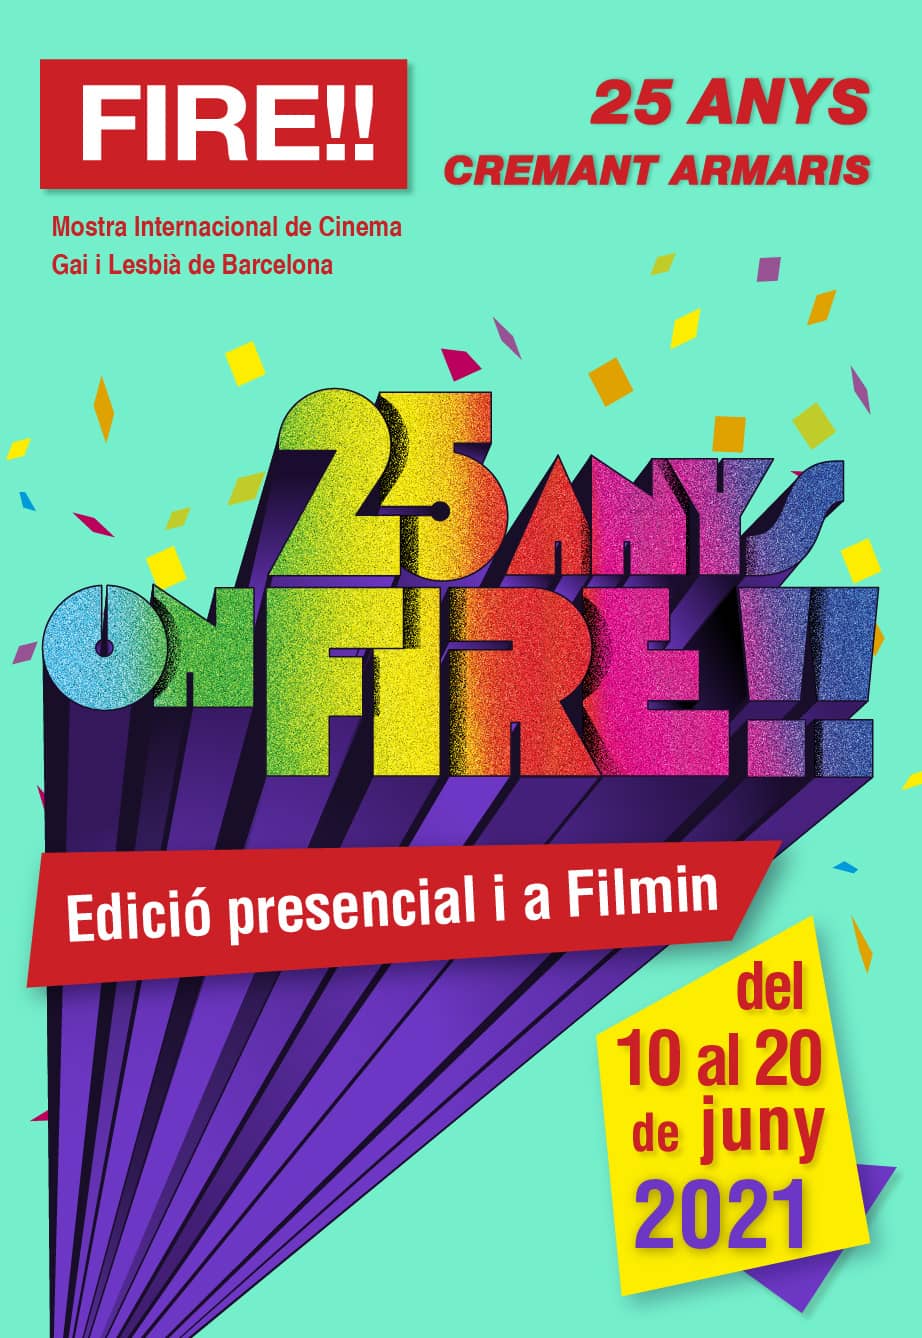 25 anys on FIRE!! Edició 2021 presencial i a FILMIN